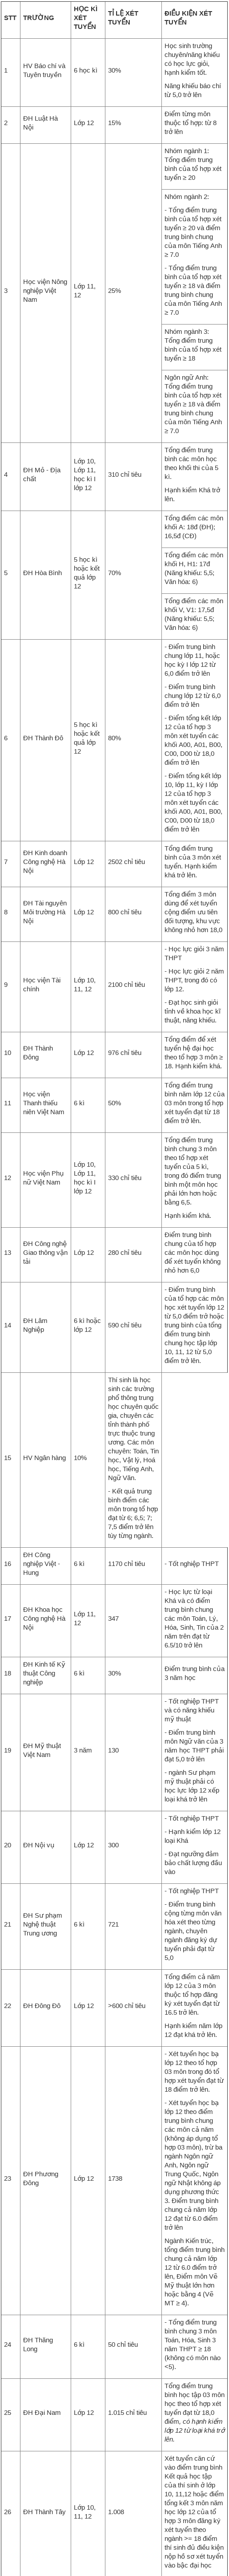 Các trường xét học bạ năm 2018 ở Hà Nội, danh sách các trường Đại học Cao đẳng Xét tuyển học bạ THPT năm 2018 tại Hà Nội